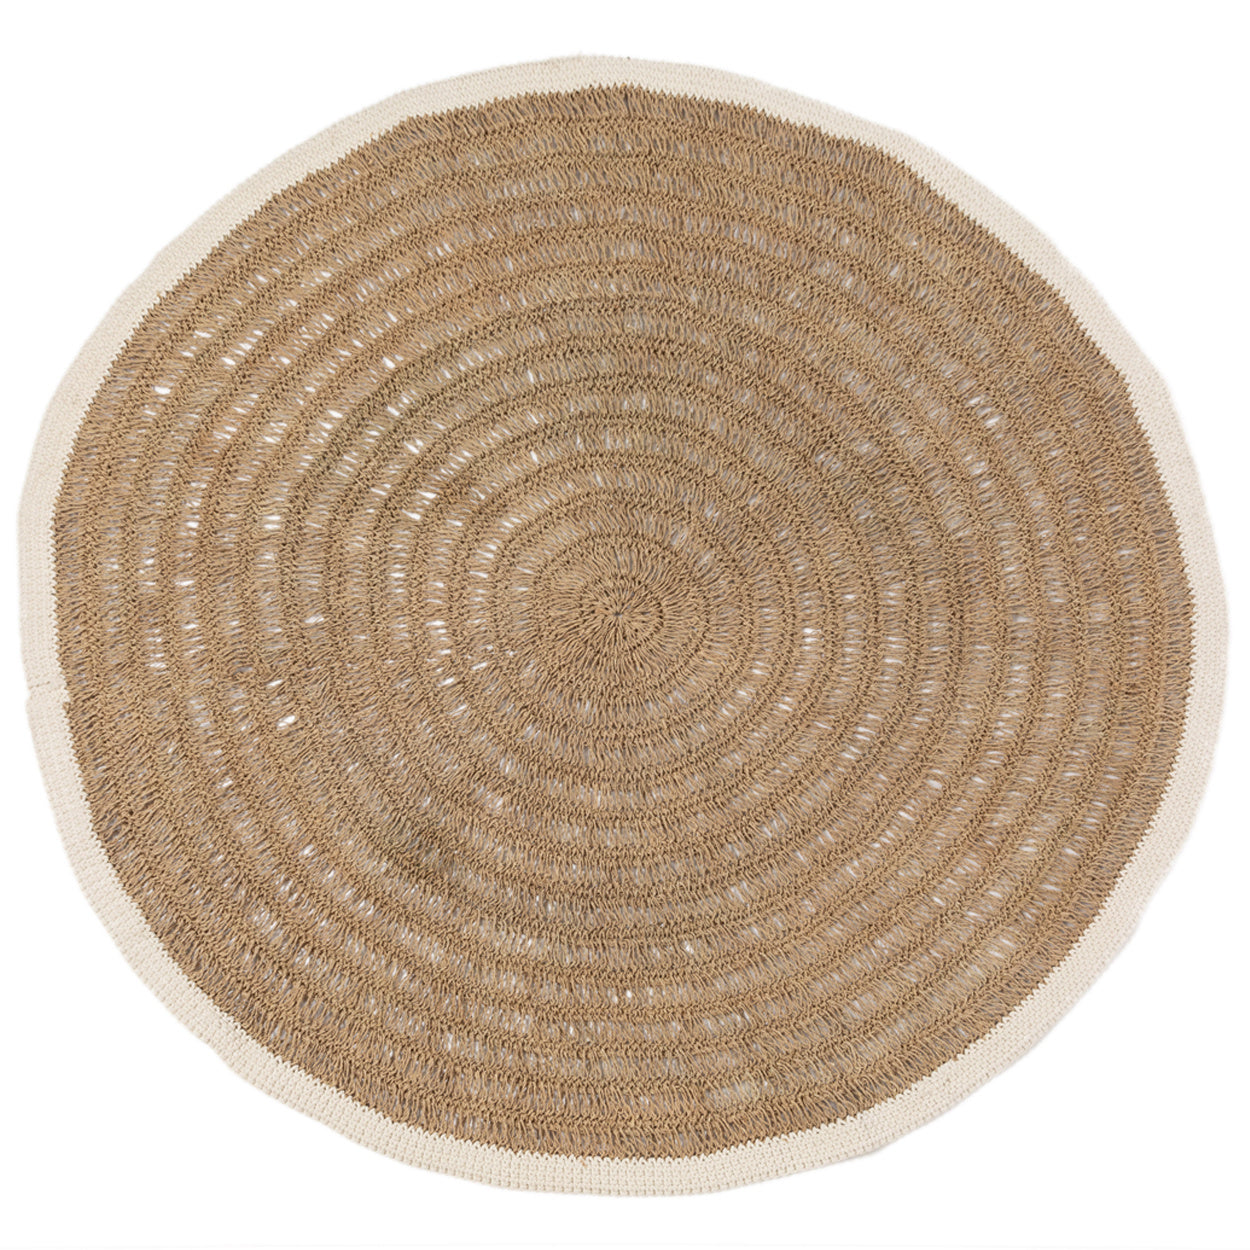 het seagrass & katoen rond tapijt - naturel wit - 200